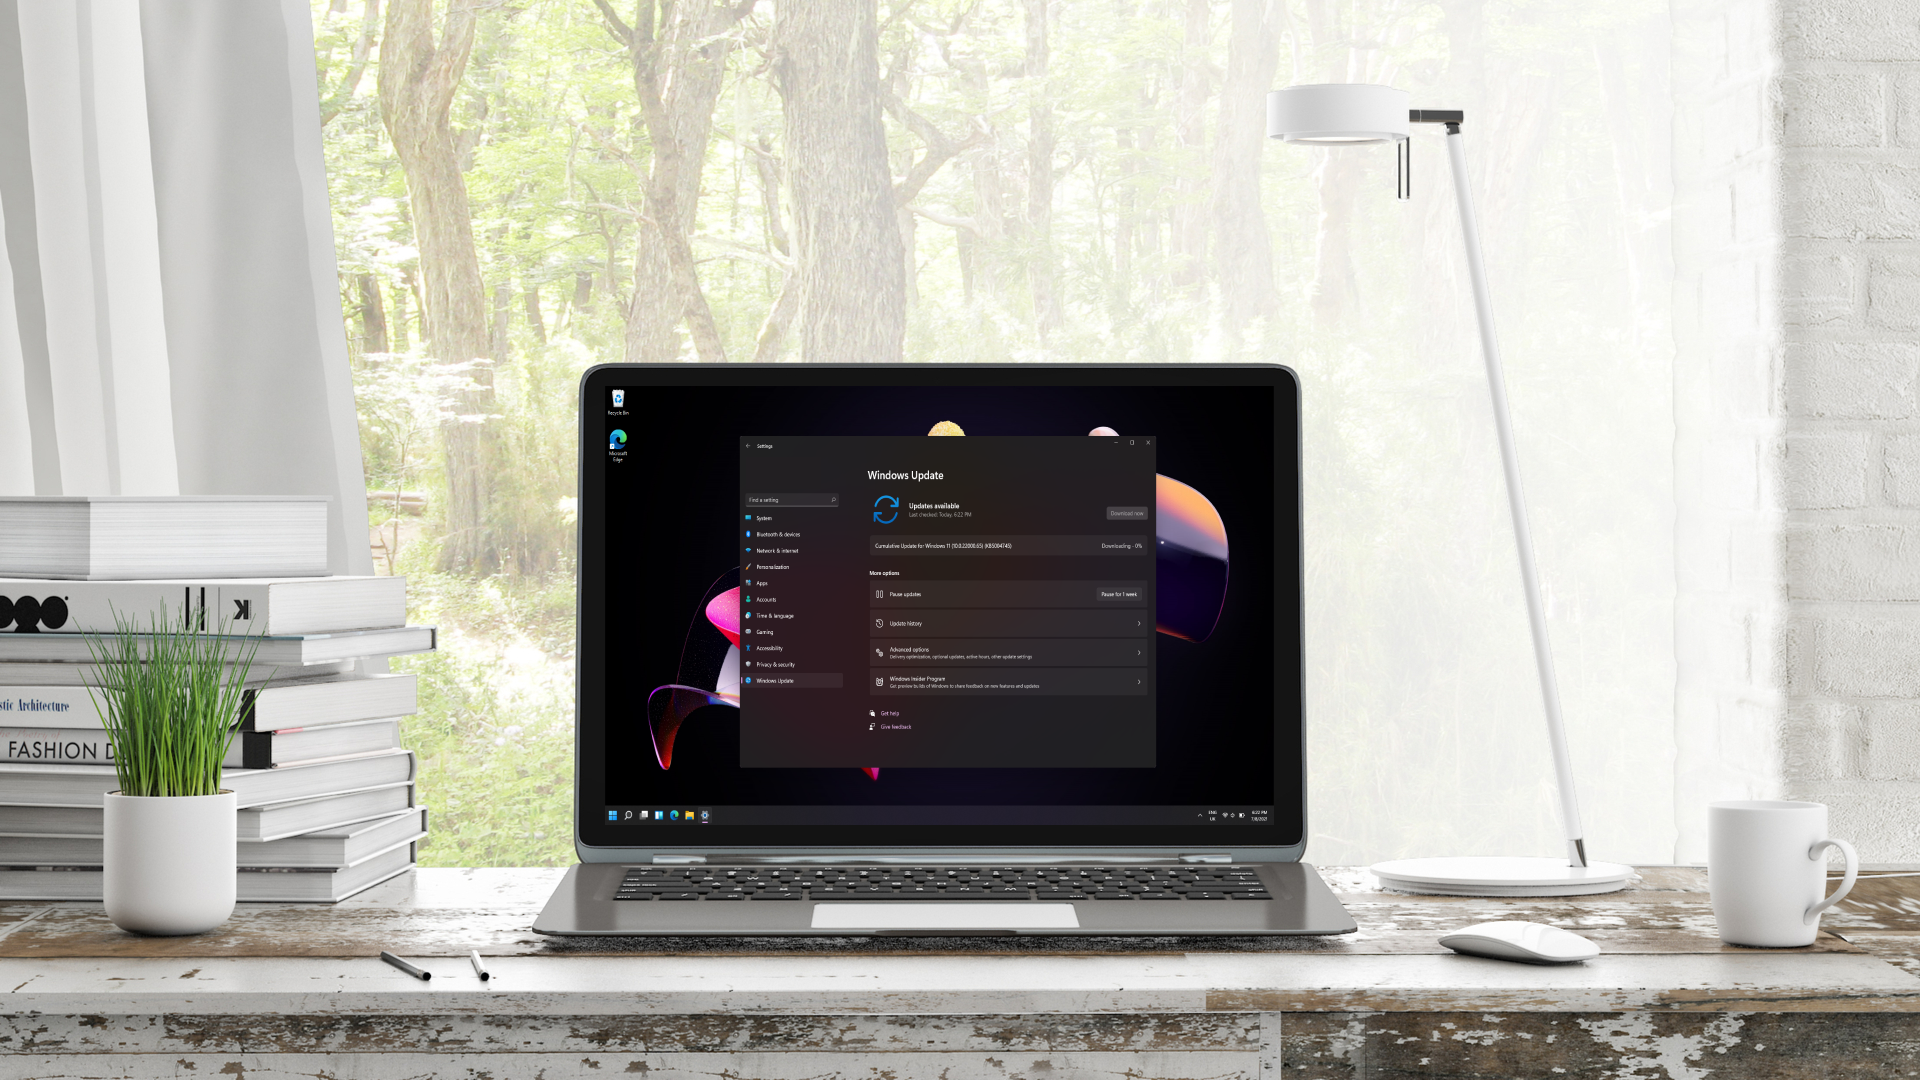 به روز رسانی ویندوز 11 روی لپ تاپ در دفتر نمایش داده می شود